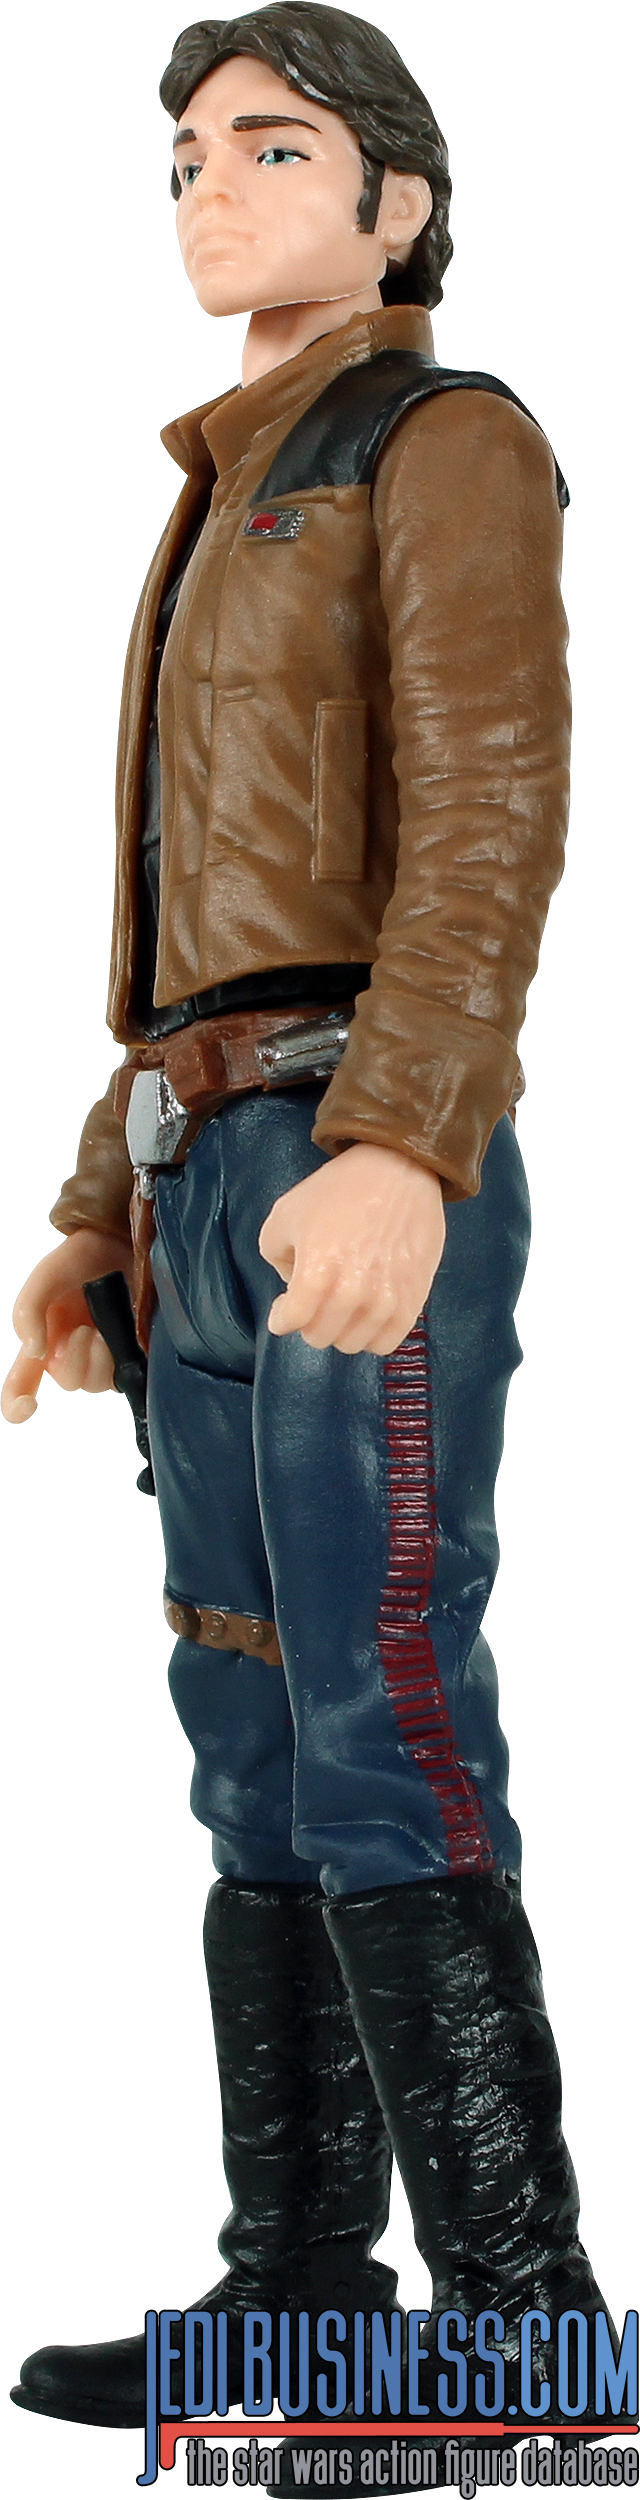 Han Solo Force Link 2.0 Starter Set